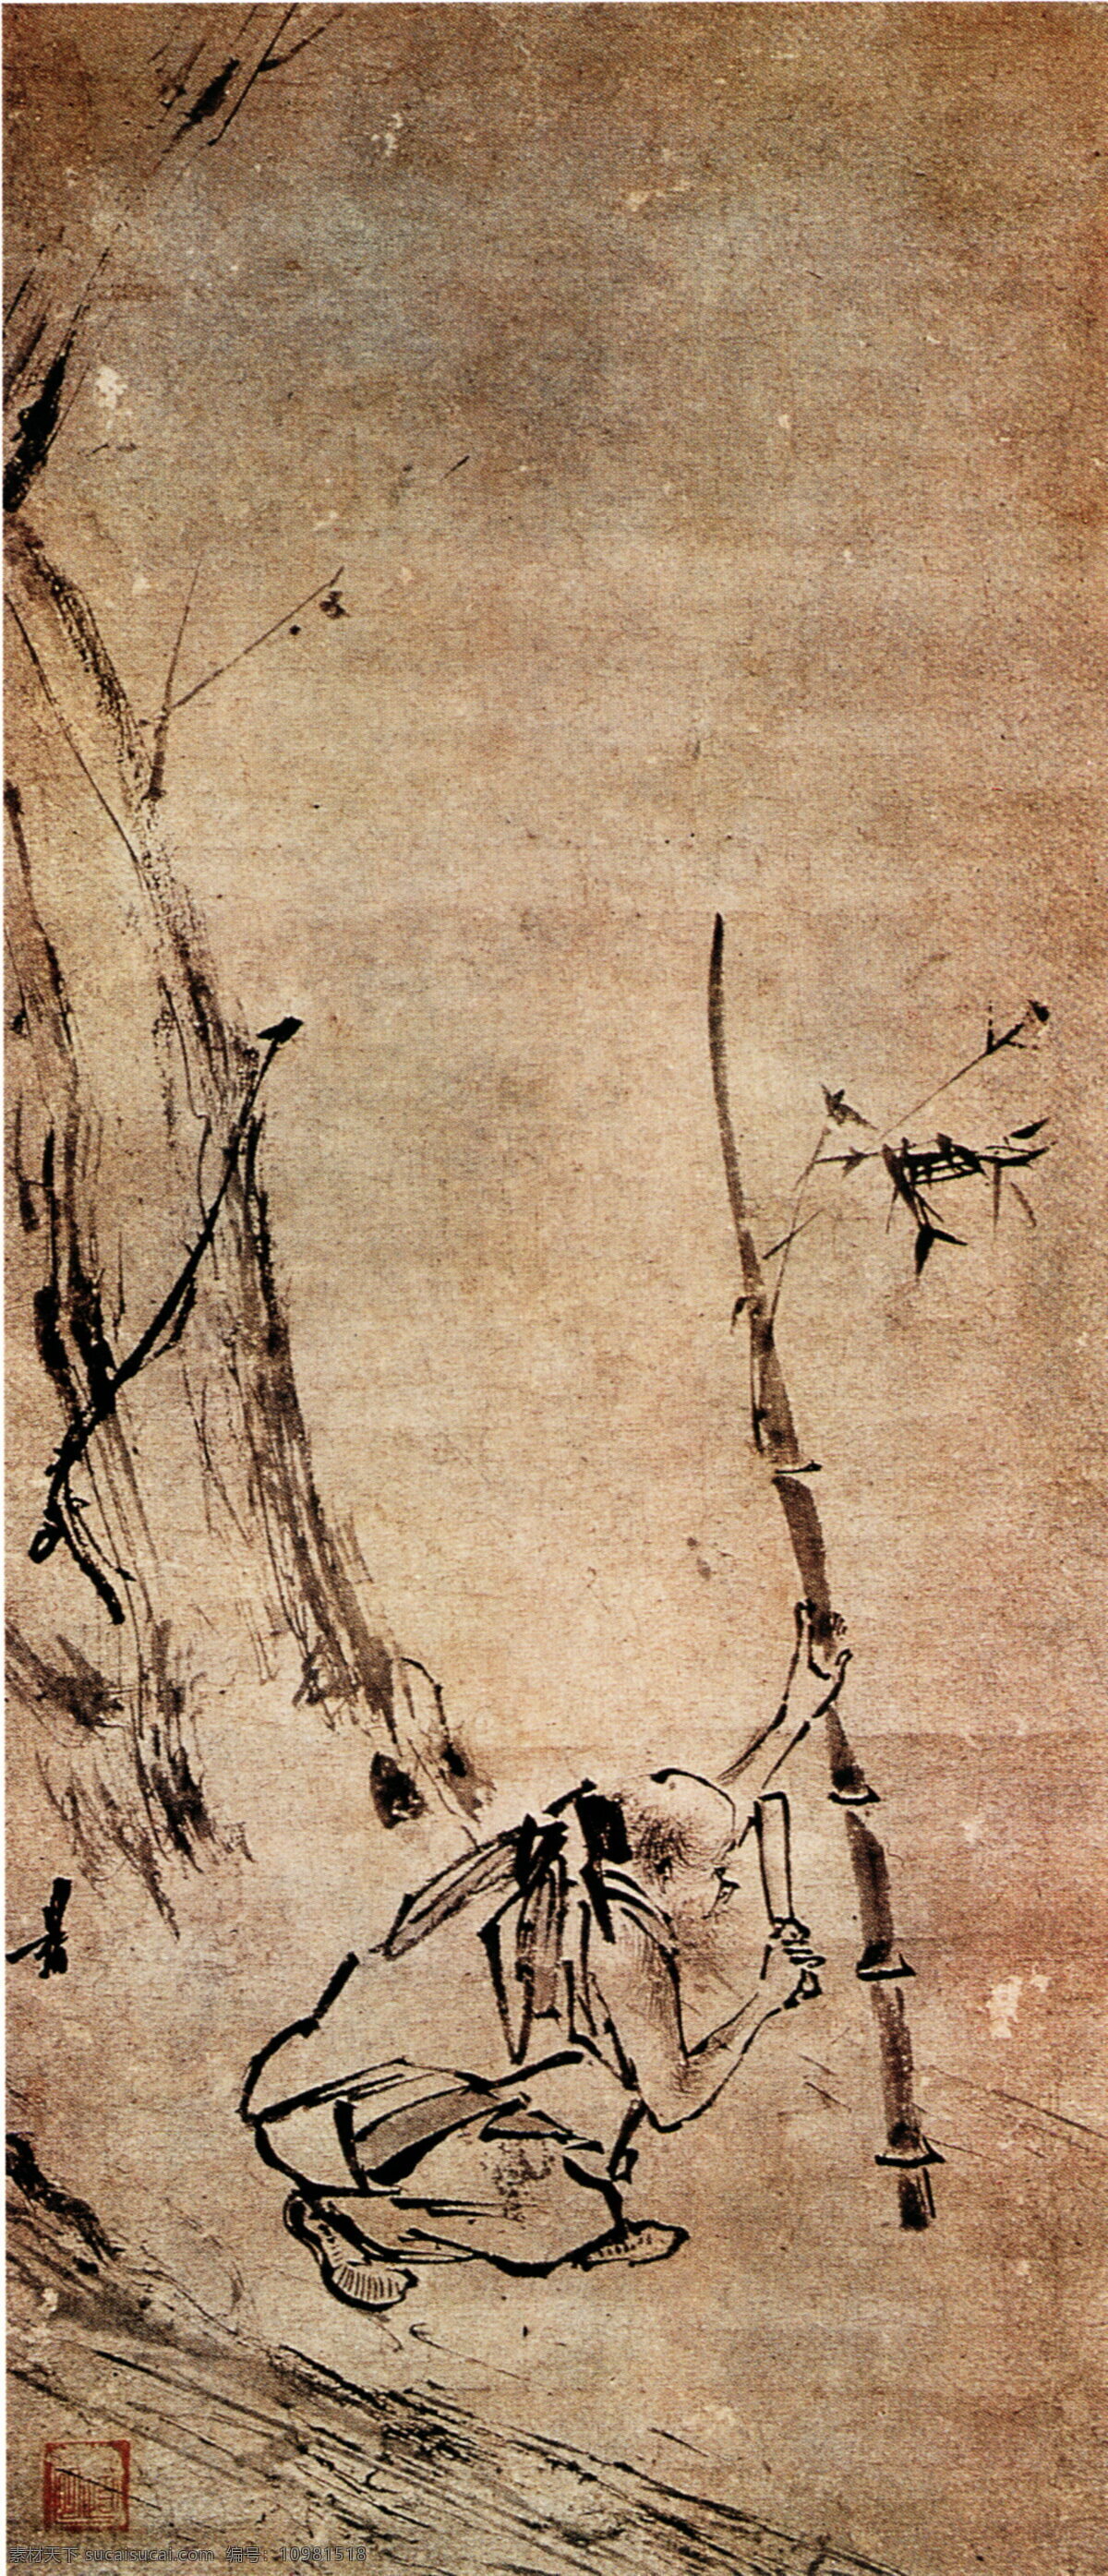 六祖 斫 竹 图 六祖斫竹图 神仙佛像 中国古画 设计素材 古典藏画 书画美术 棕色